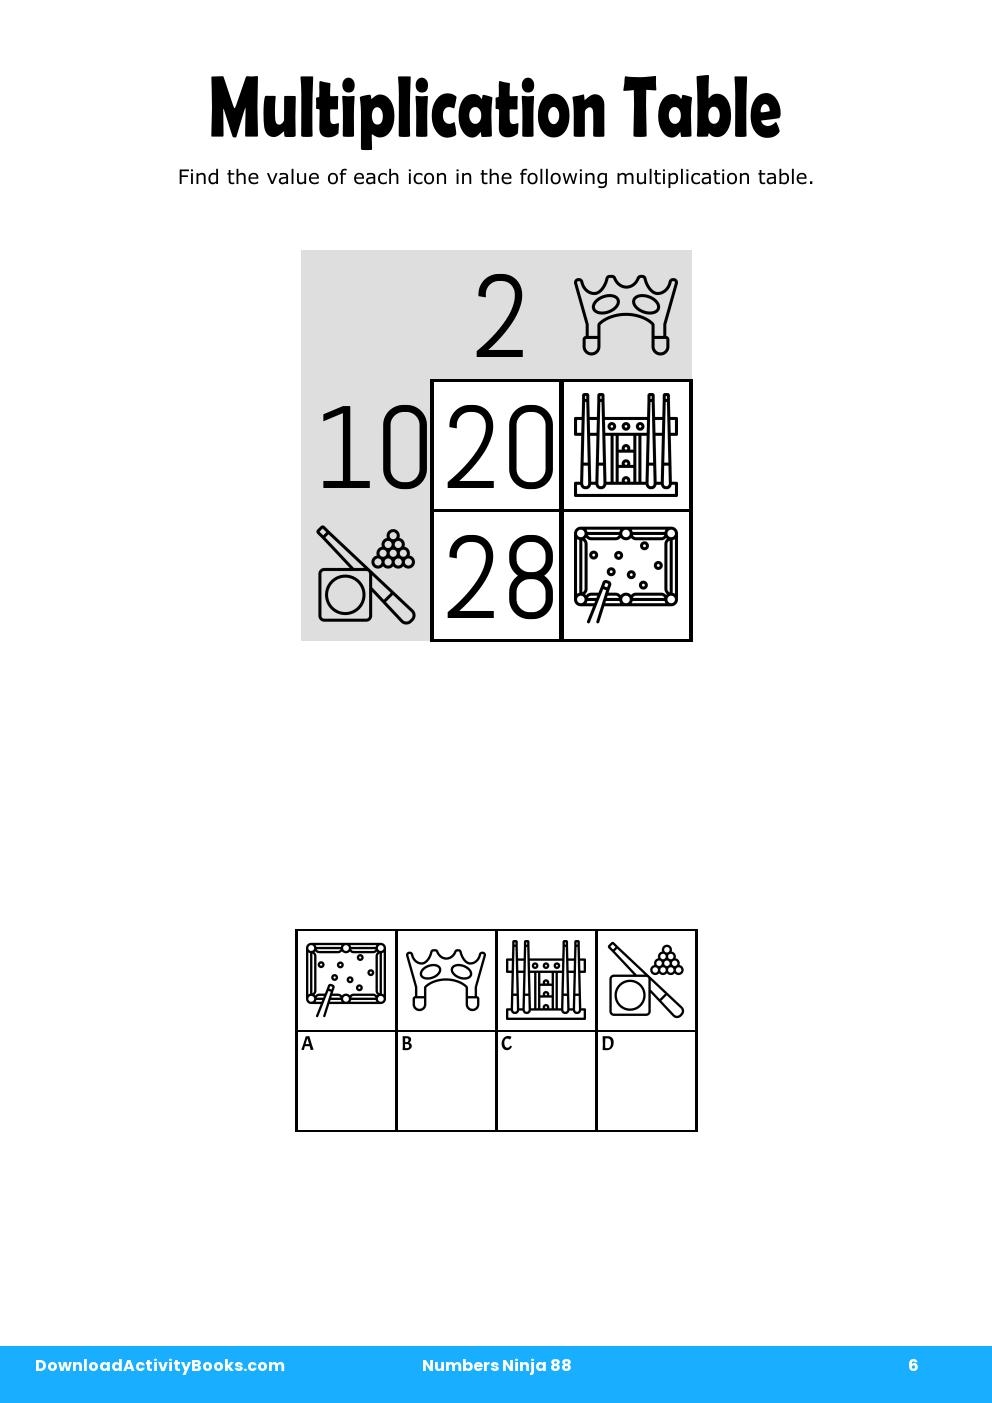 Multiplication Table in Numbers Ninja 88